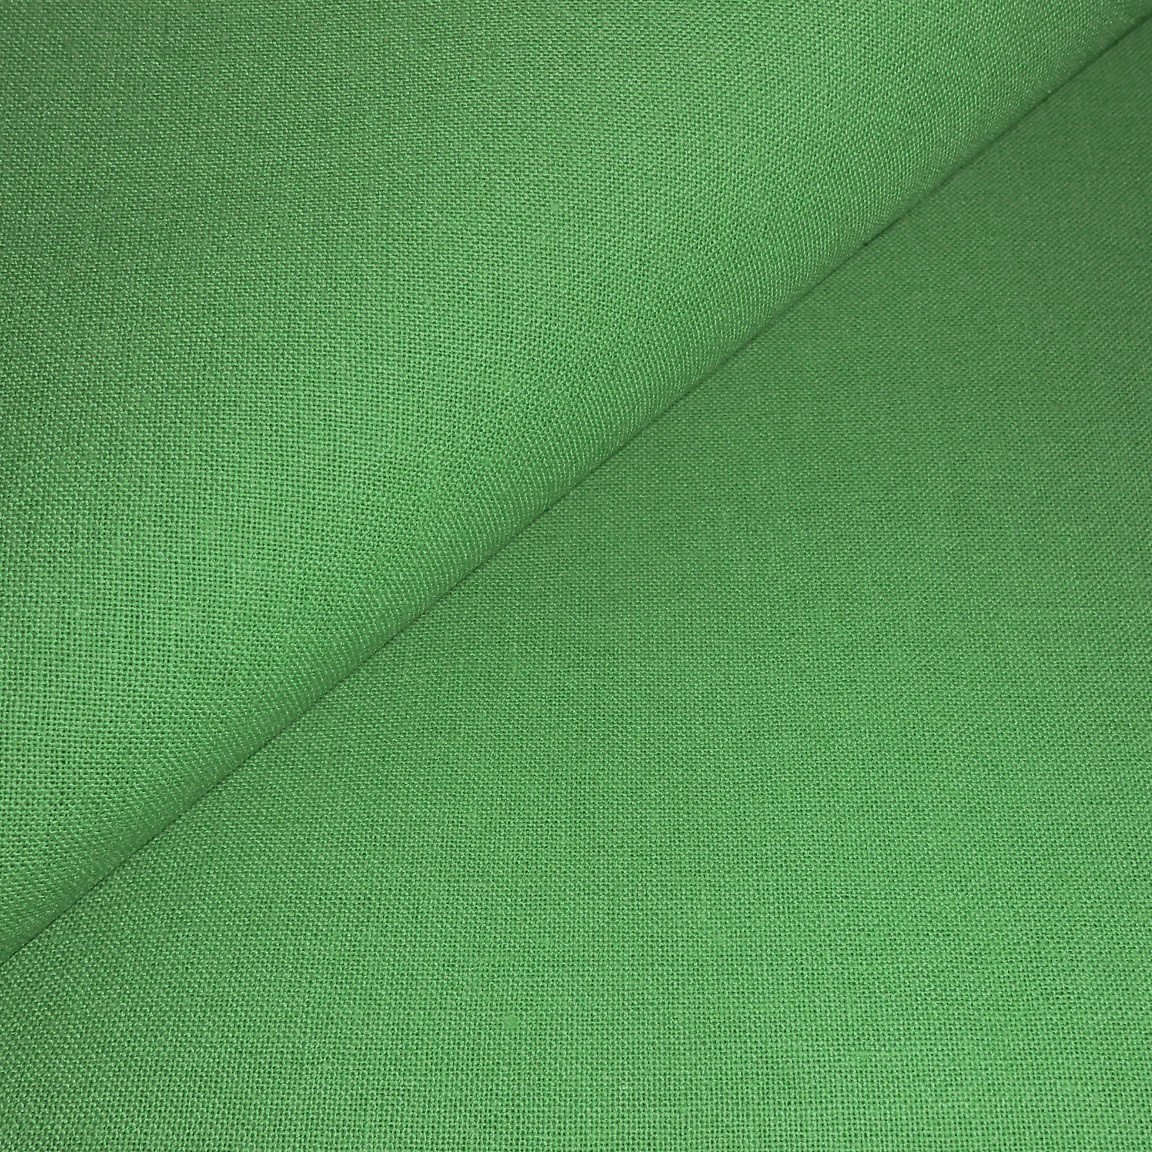 Zelené plátno  80x55cm